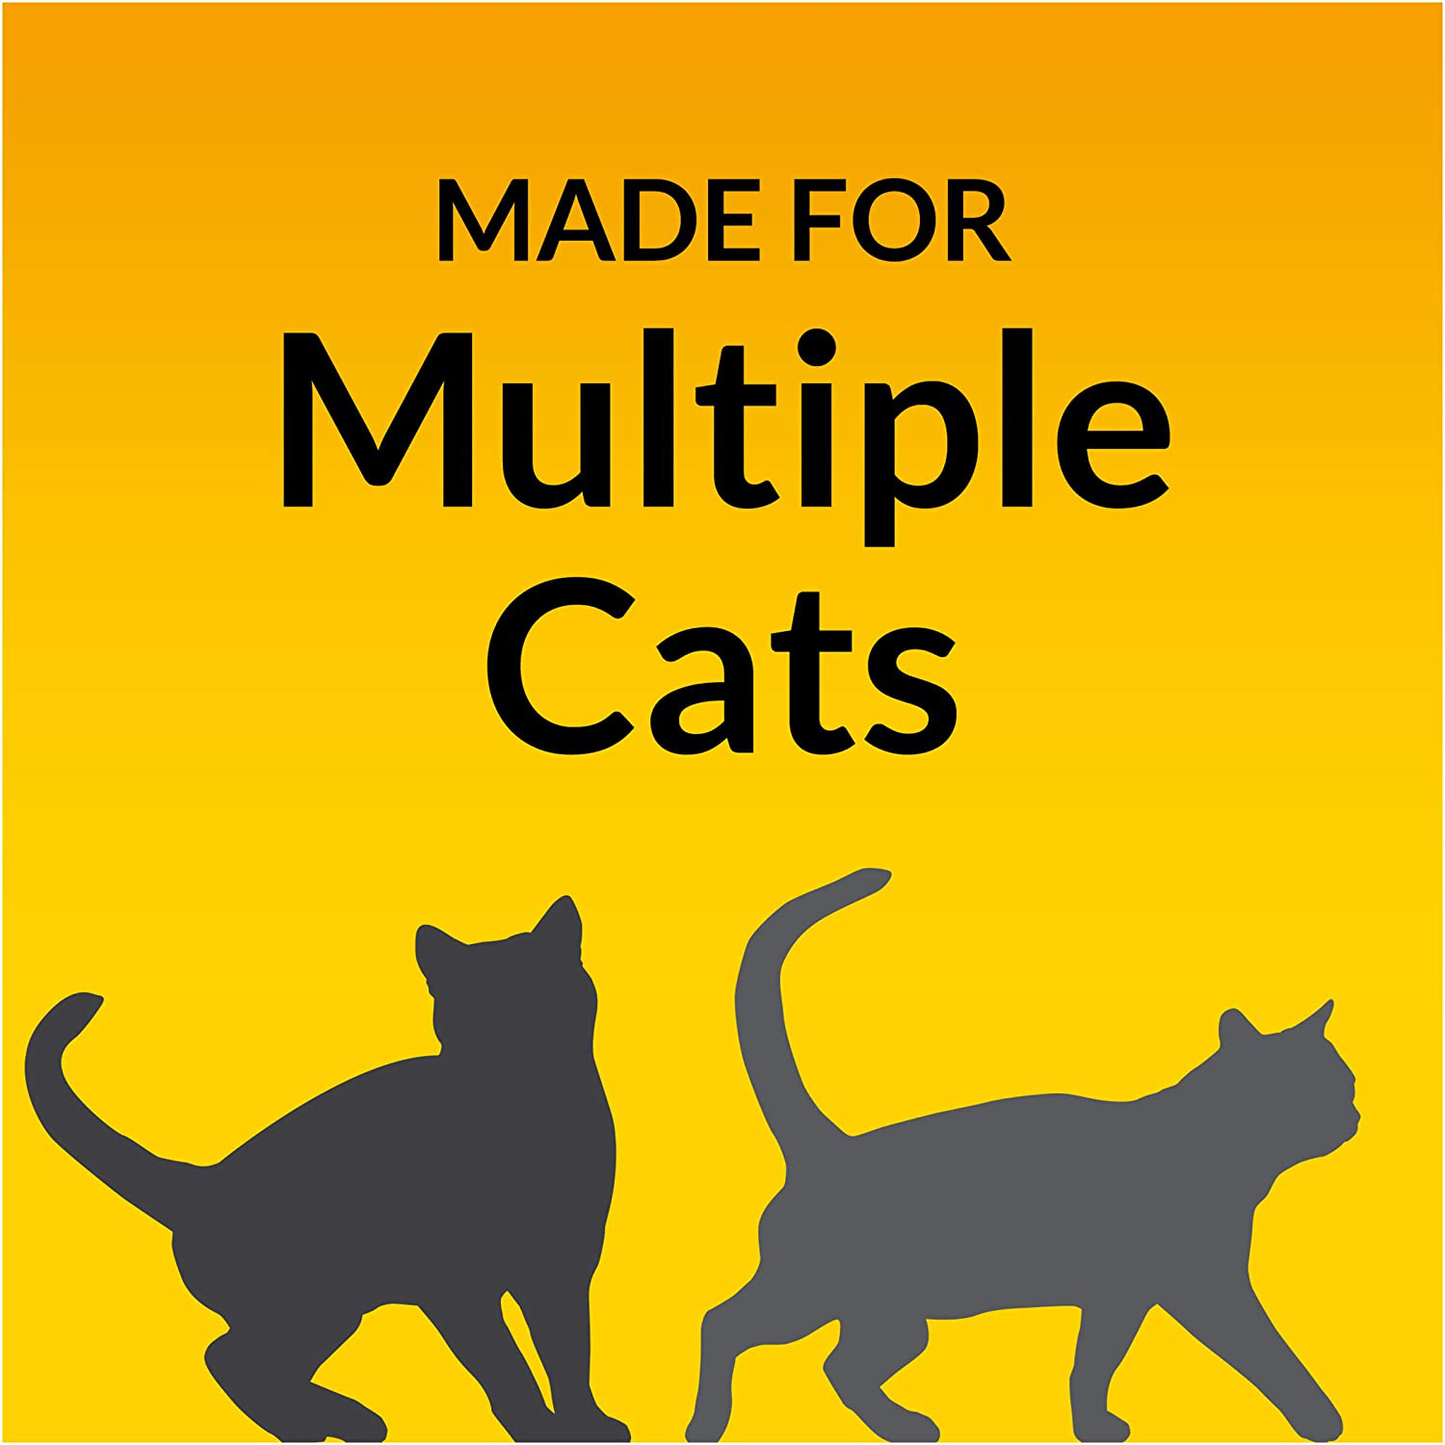 Tidy Cats Breeze Cat Litter Pellets Refill, 3.5 LB Animals & Pet Supplies > Pet Supplies > Cat Supplies > Cat Litter Tidy Cats   